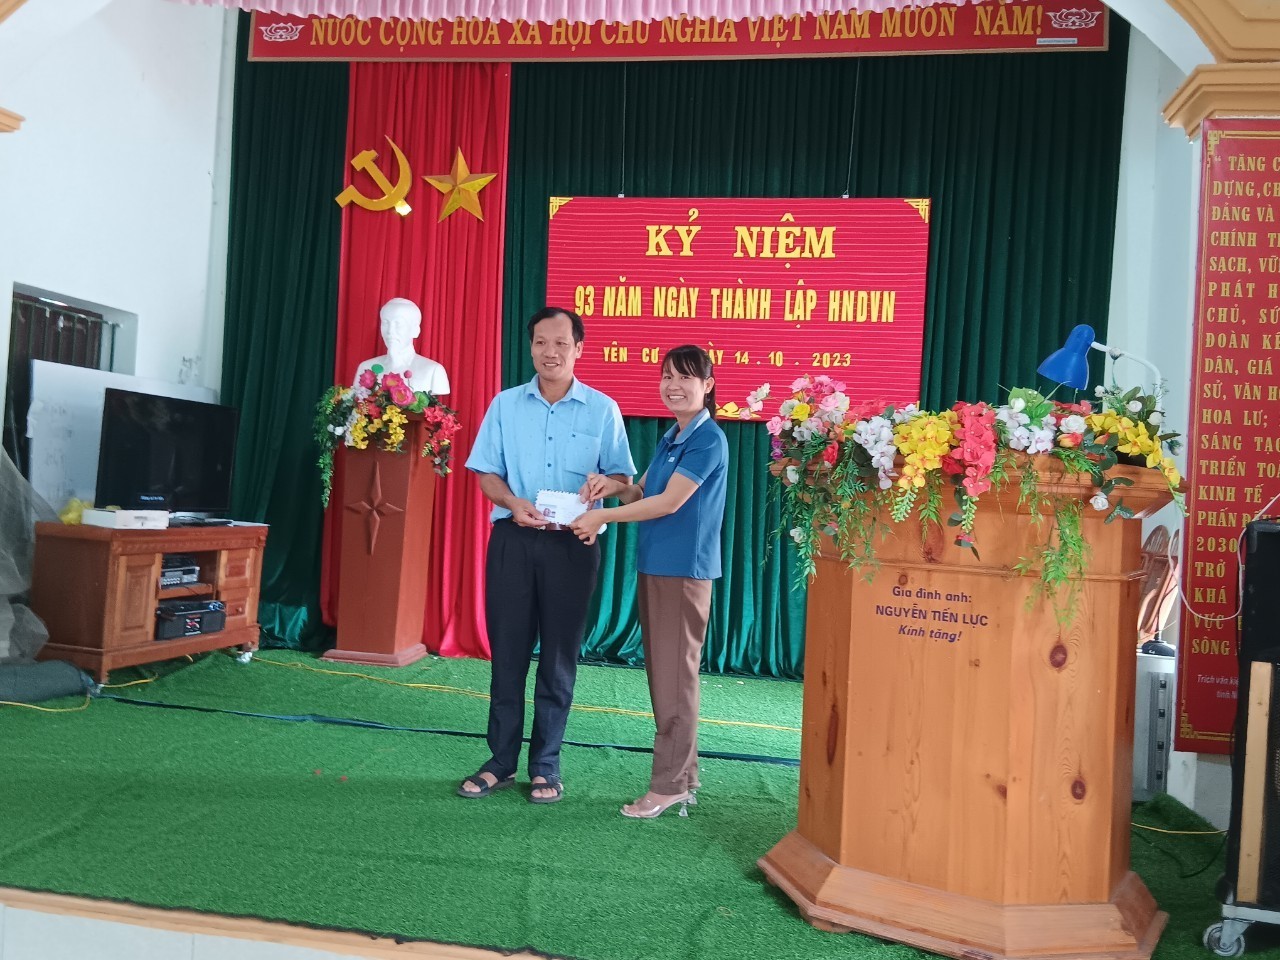 Kỷ niệm 93 năm thành lập Hội nông dân Việt Nam  (14/10/1930- 14/10/2023).